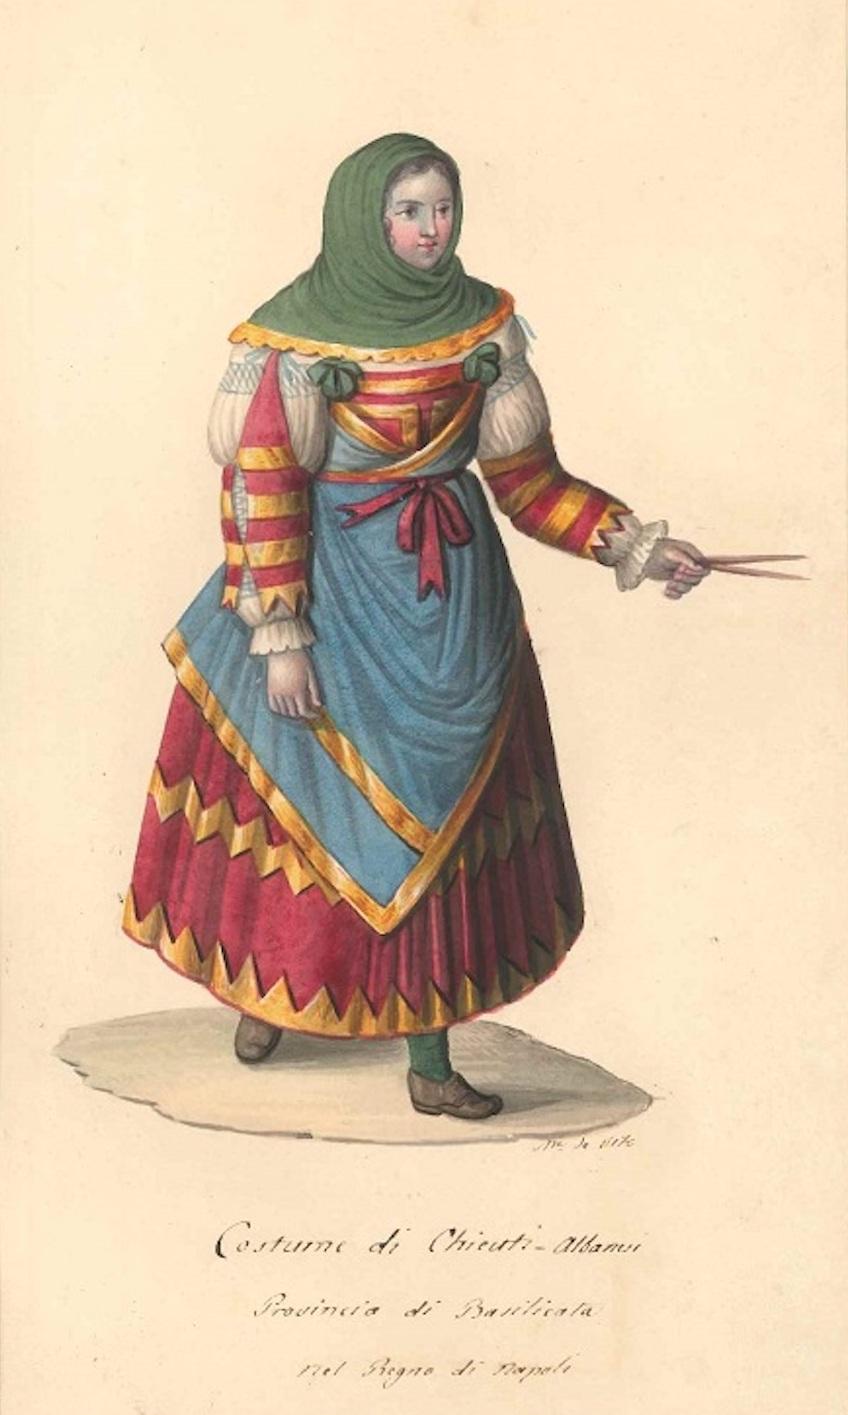 Michela De Vito Figurative Art - Costume di Chieuti Albanesi - Watercolor by M. De Vito - 1820 ca.